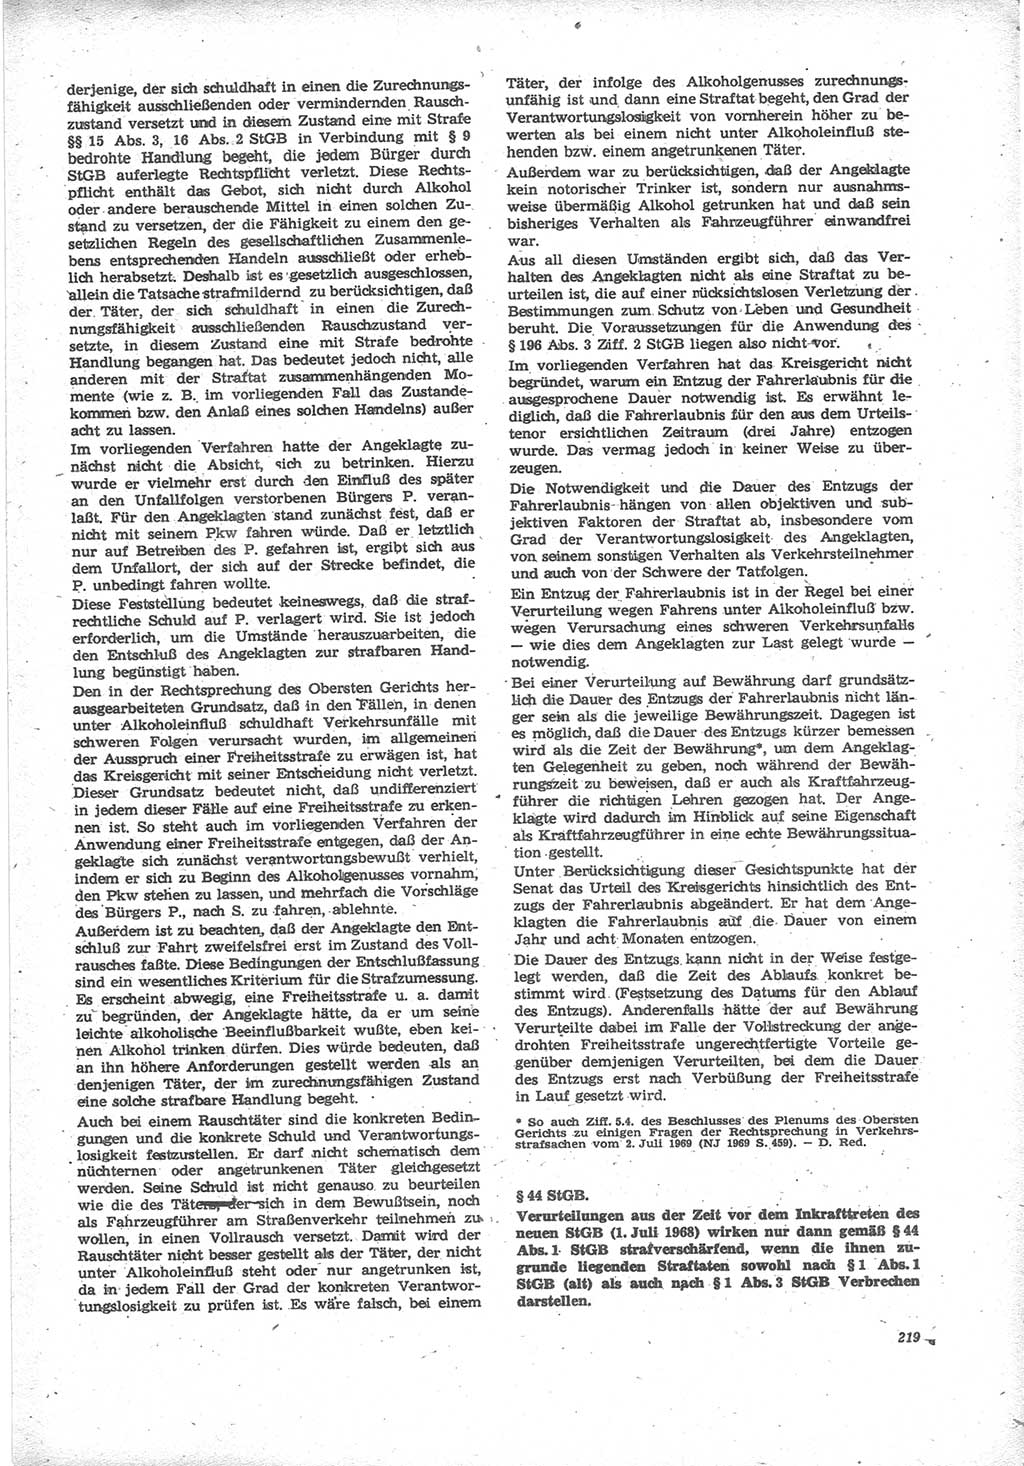 Neue Justiz (NJ), Zeitschrift für Recht und Rechtswissenschaft [Deutsche Demokratische Republik (DDR)], 24. Jahrgang 1970, Seite 219 (NJ DDR 1970, S. 219)